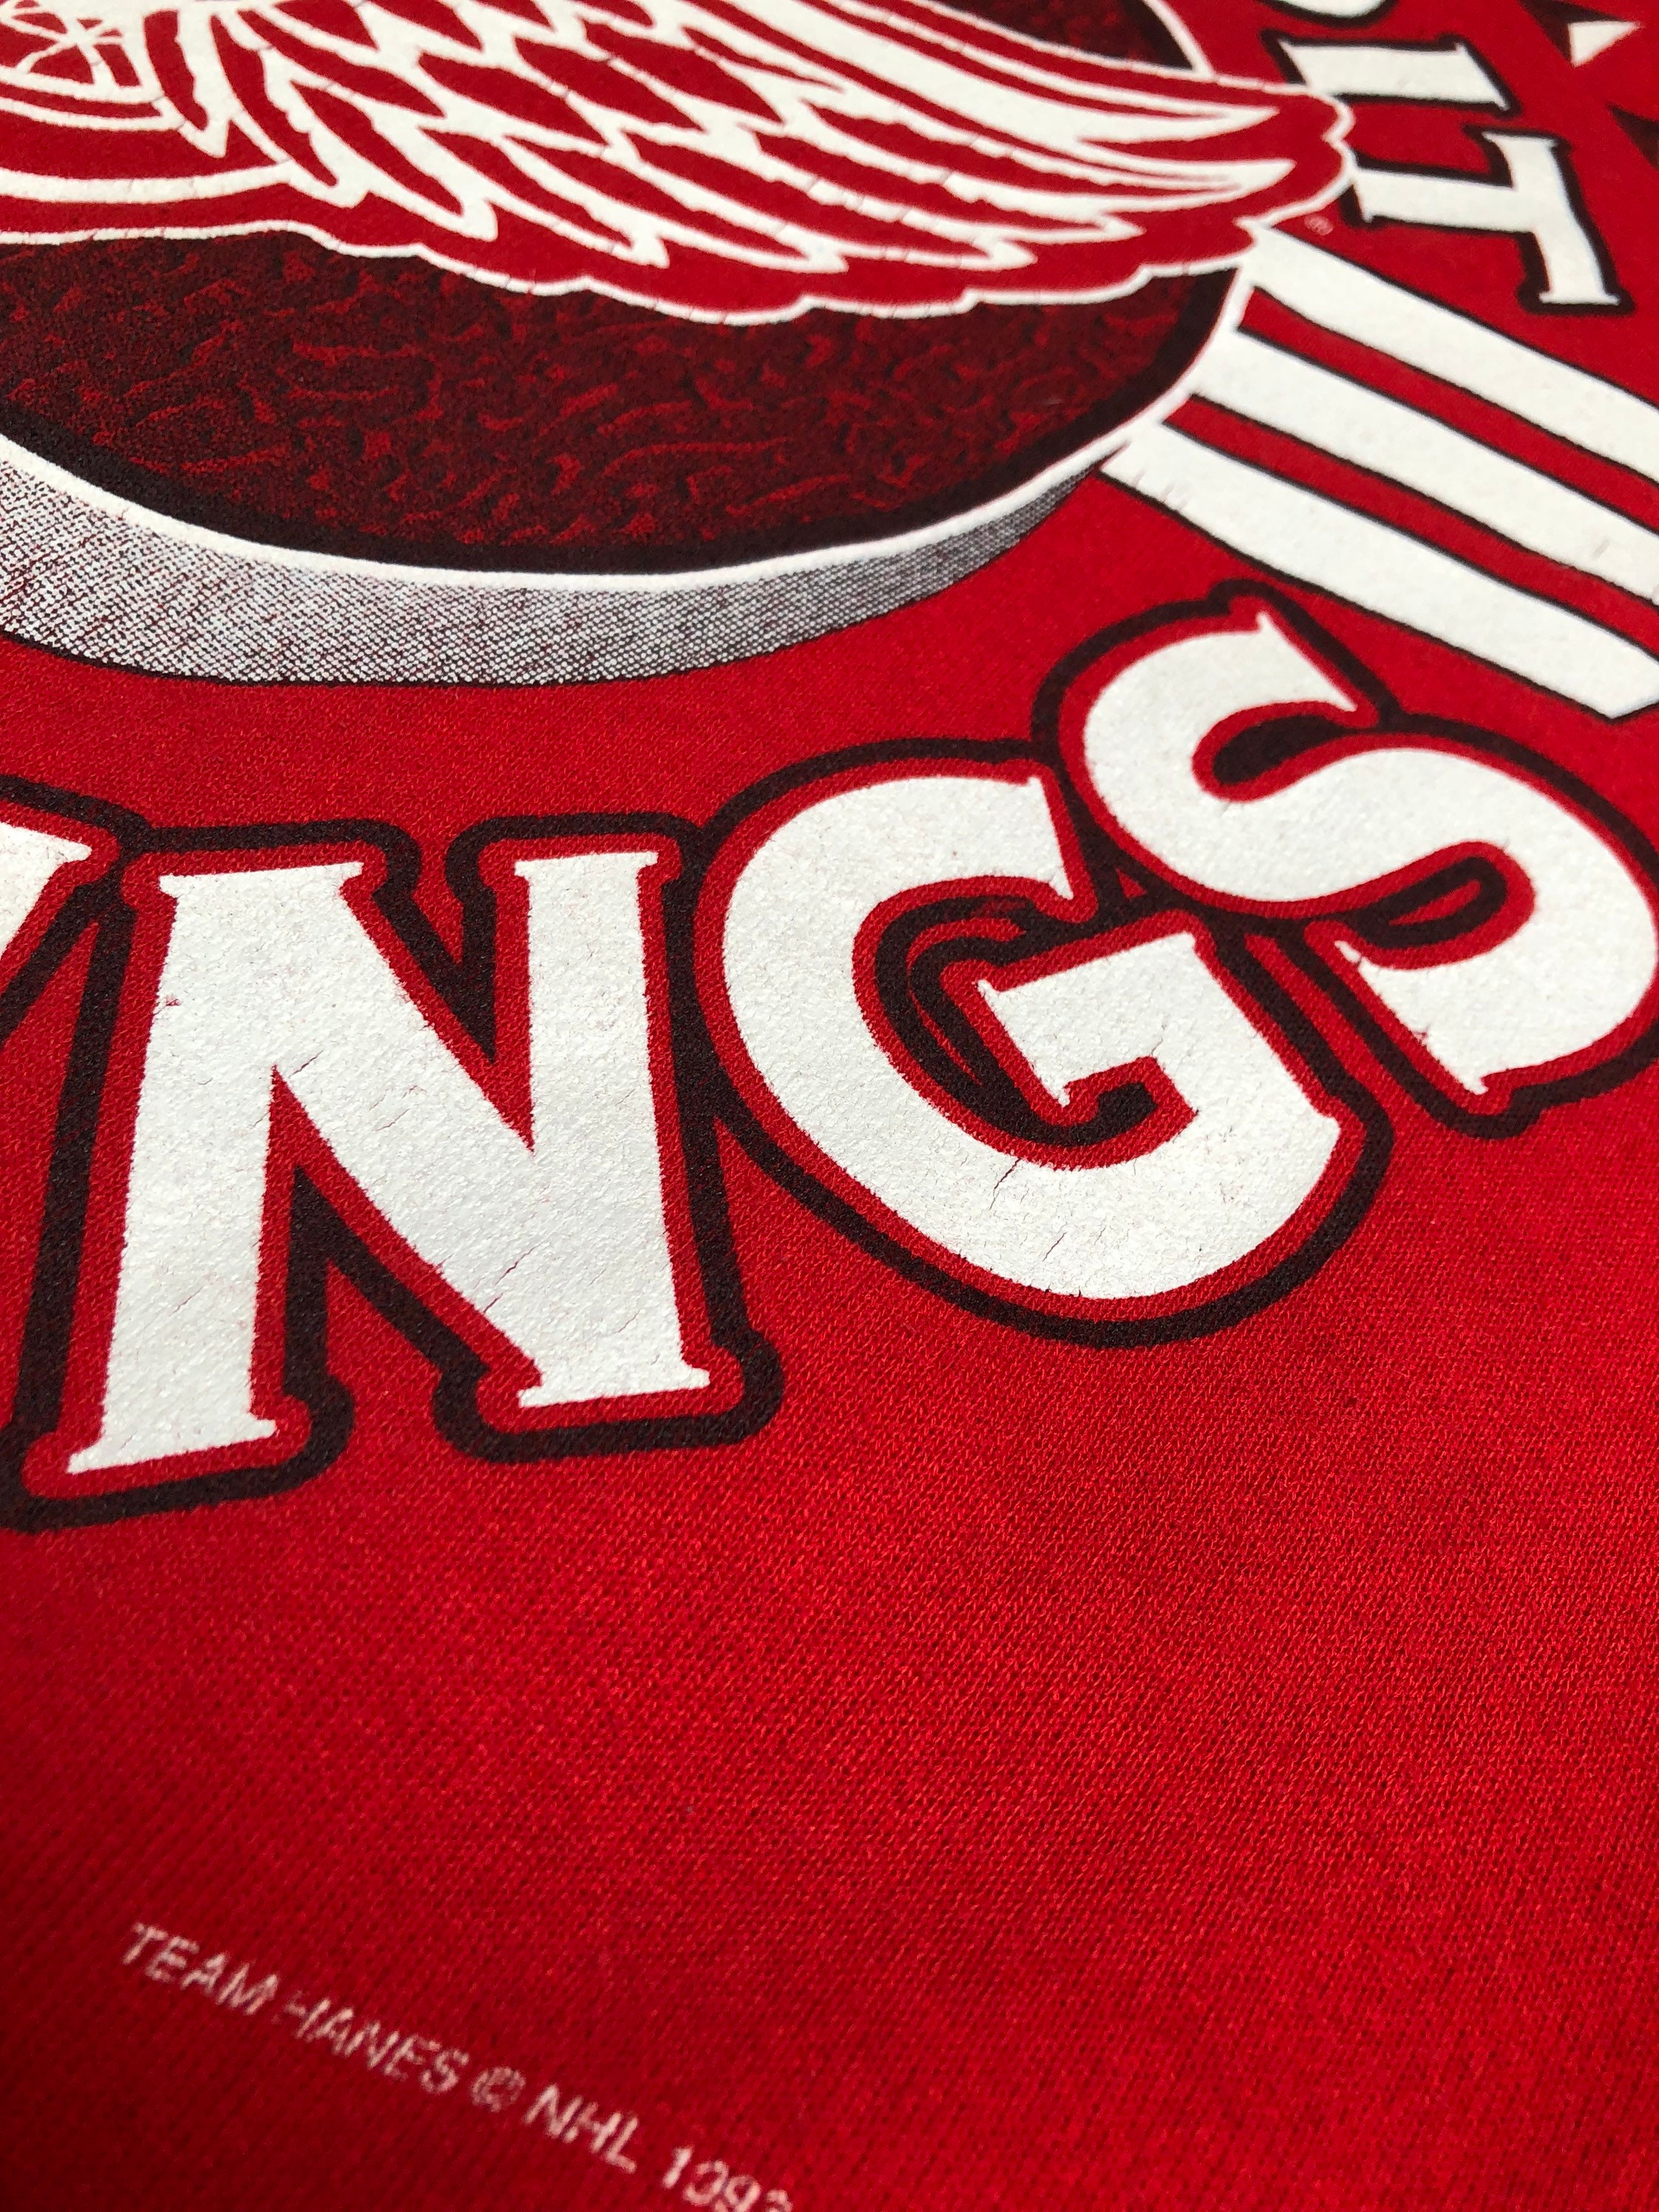 Reebok NHL Detroit Red Wings Hoodie - Red - S - TMC Vintage Clothing